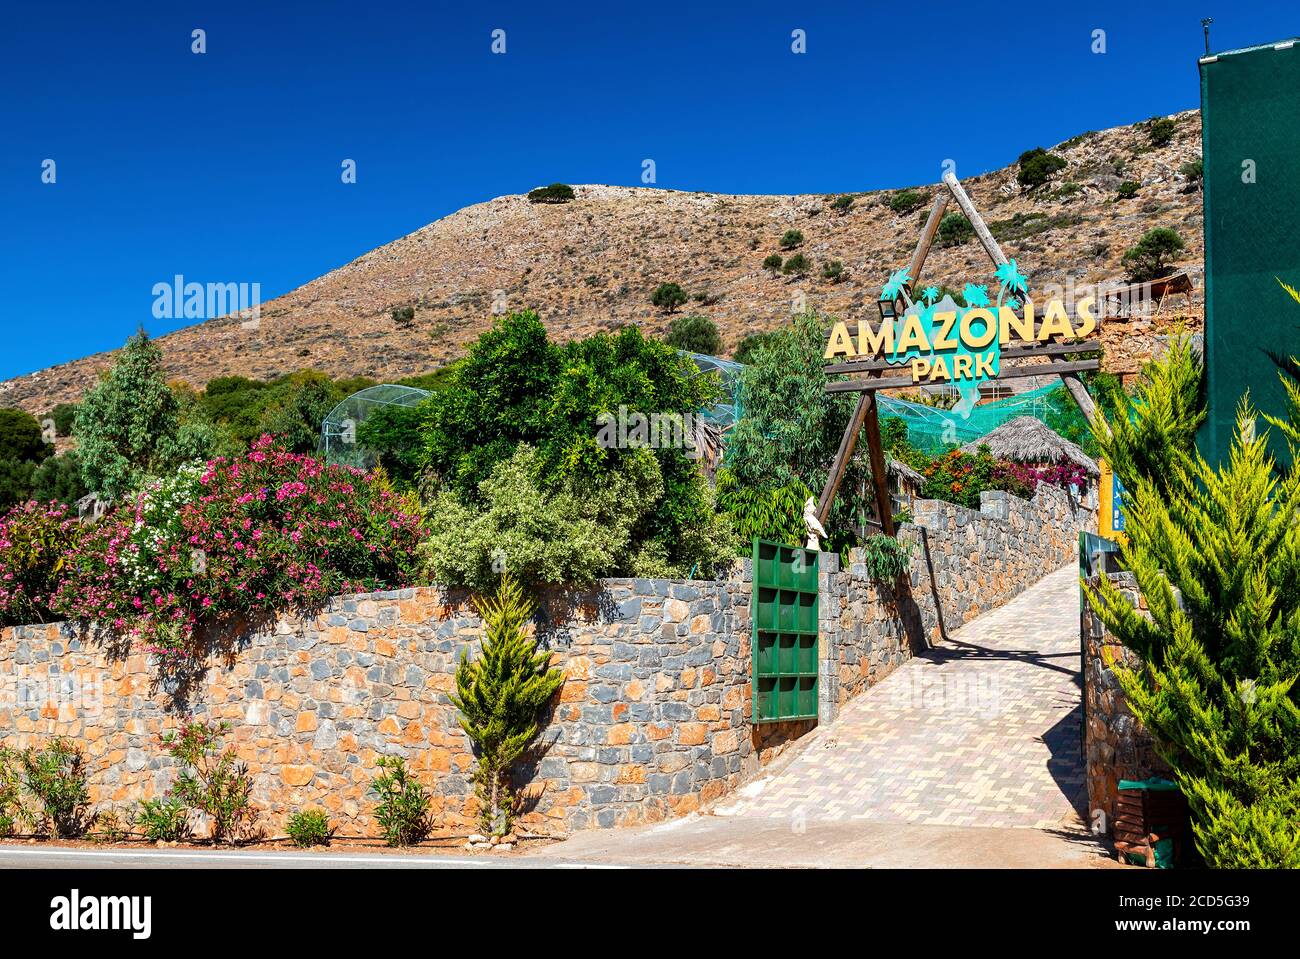 The entrance of Amazonas park, a private zoo between Neapolis & Kourounes village, Municipality of Agios Nikolaos, Lassithi, Crete, Greece. Stock Photo